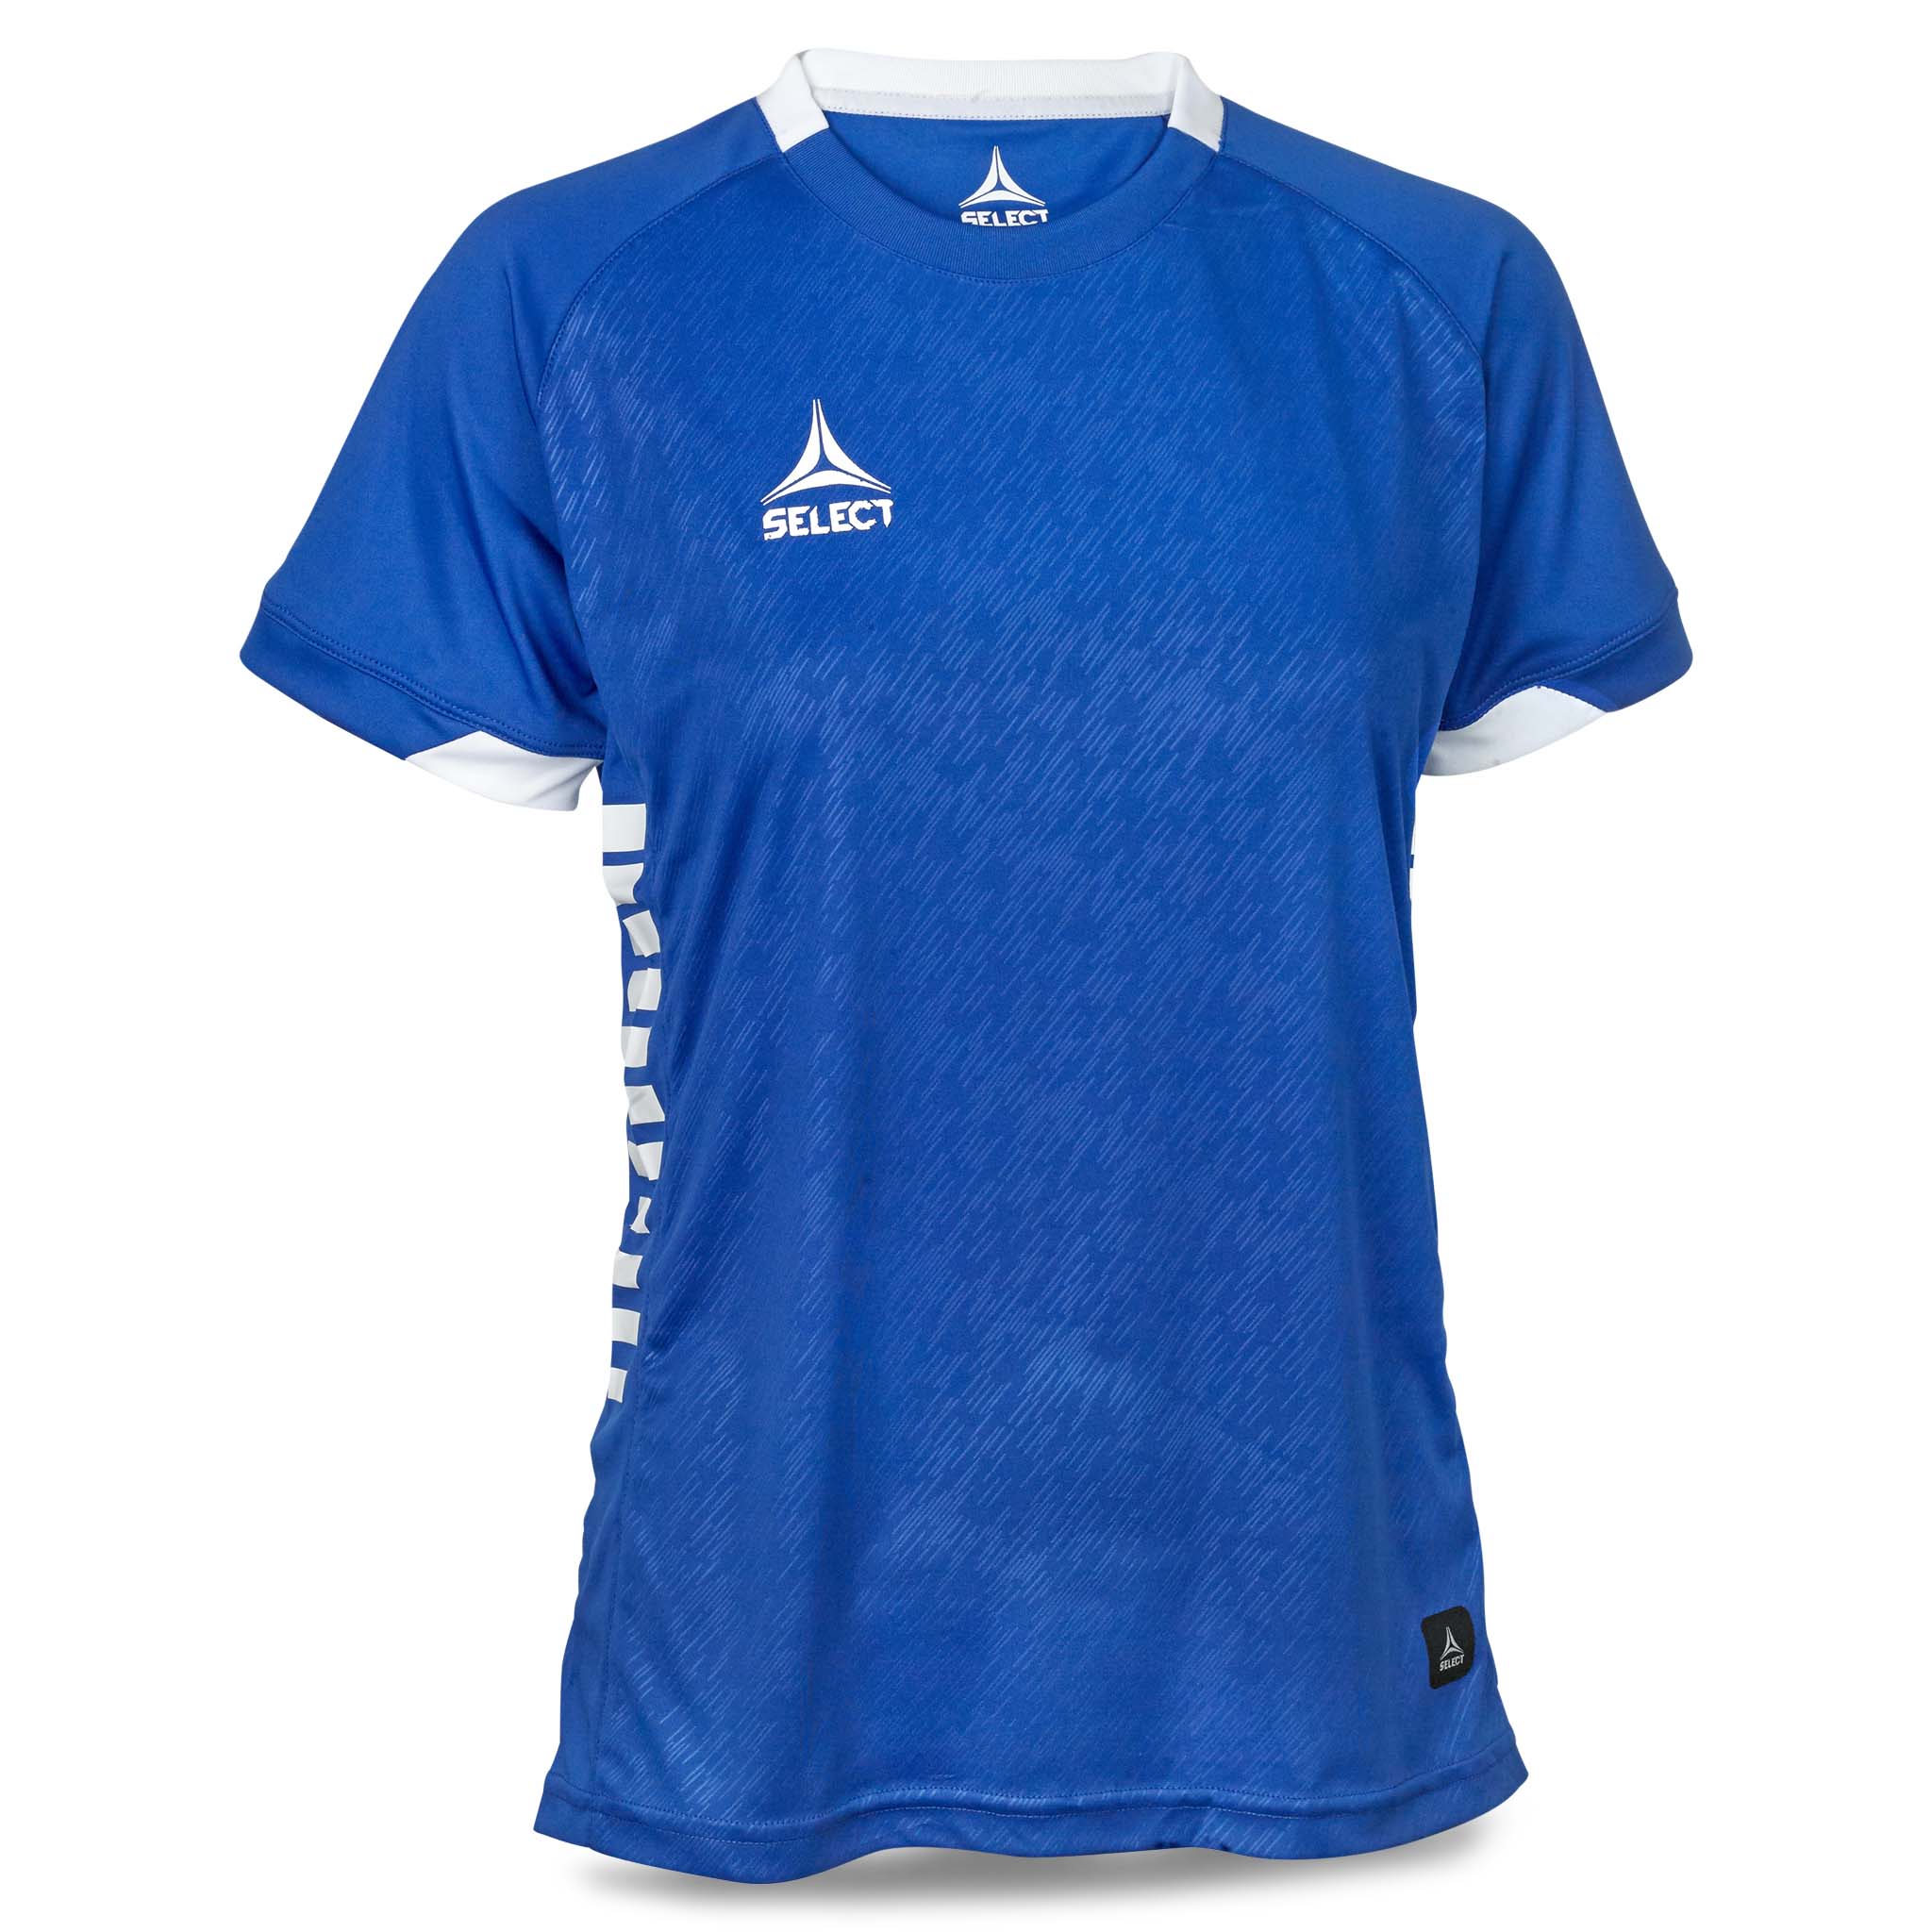 Spain Short Sleeve player shirt - women #colour_blue